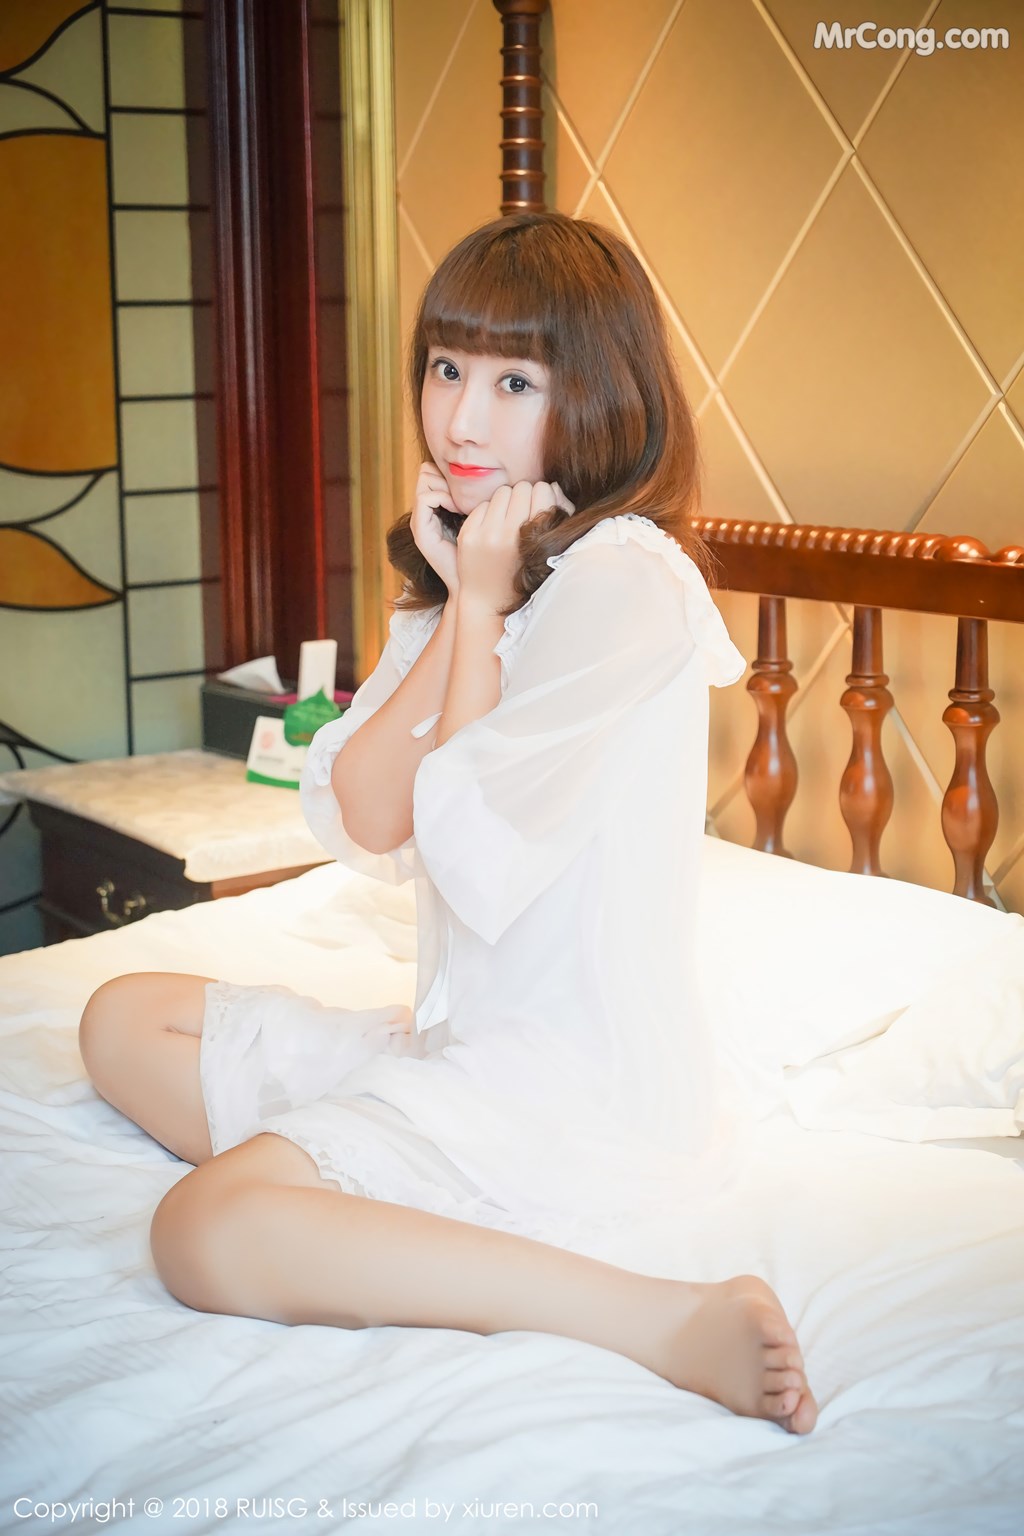 RuiSG Vol.043: Model Xia Xiao Xiao (夏 笑笑 Summer) (43 photos)